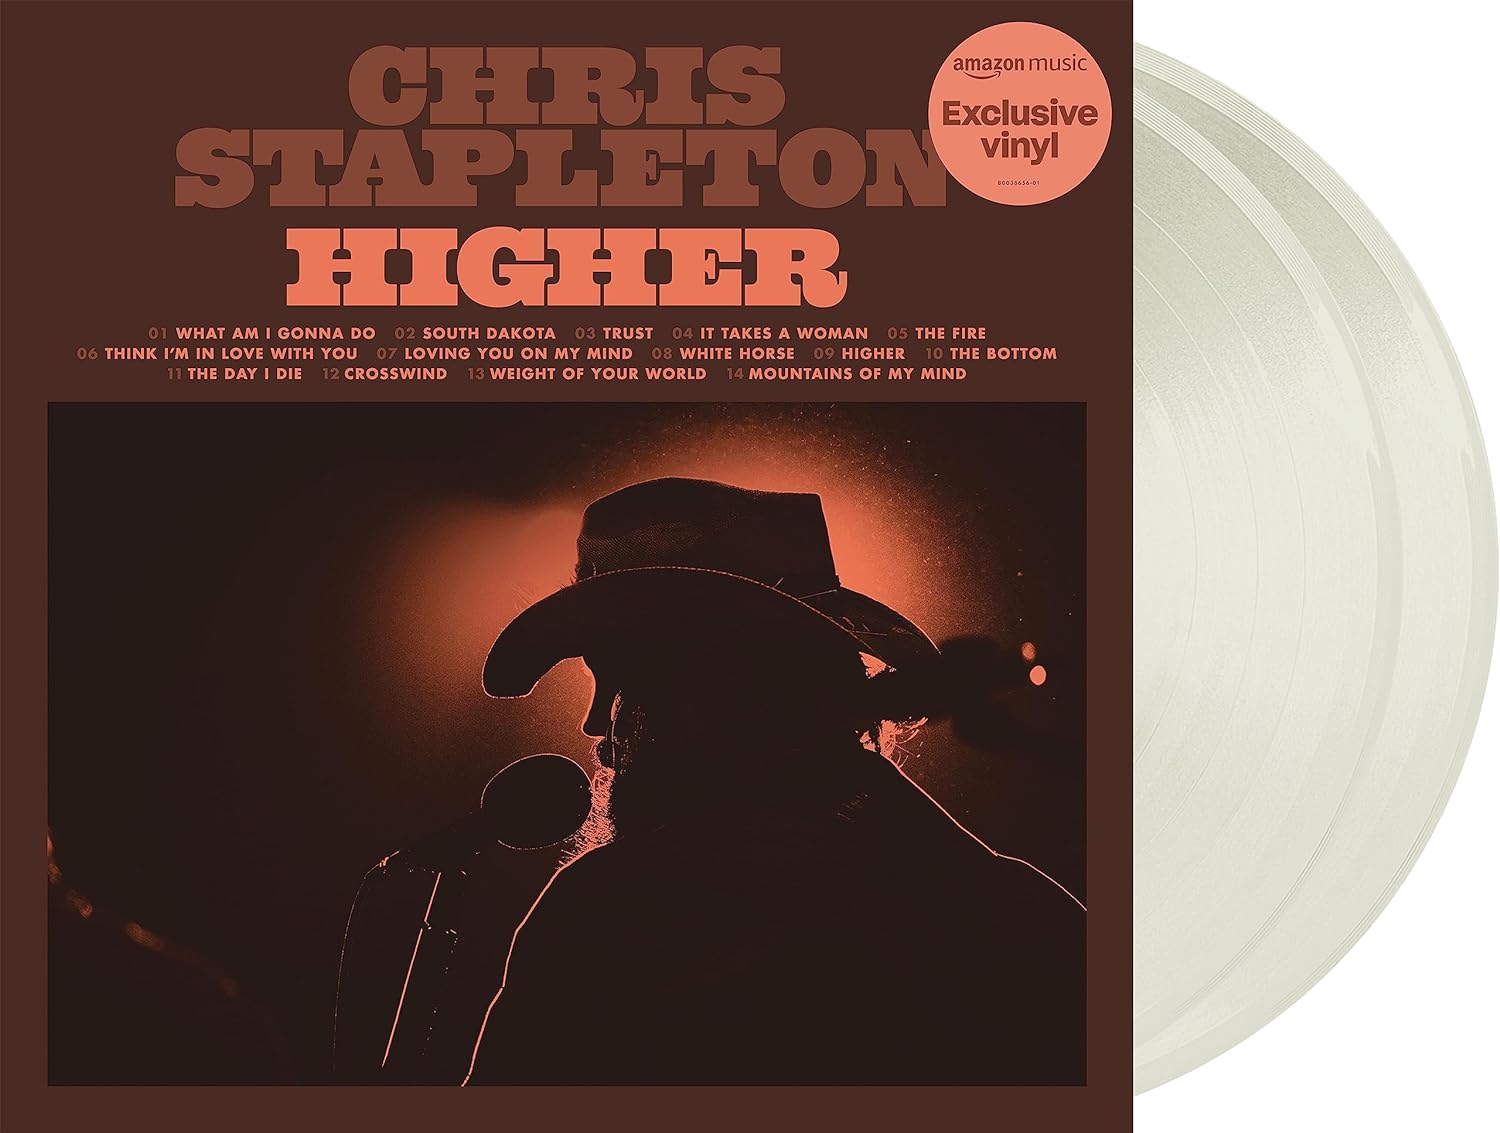 Chris Stapleton - Higher